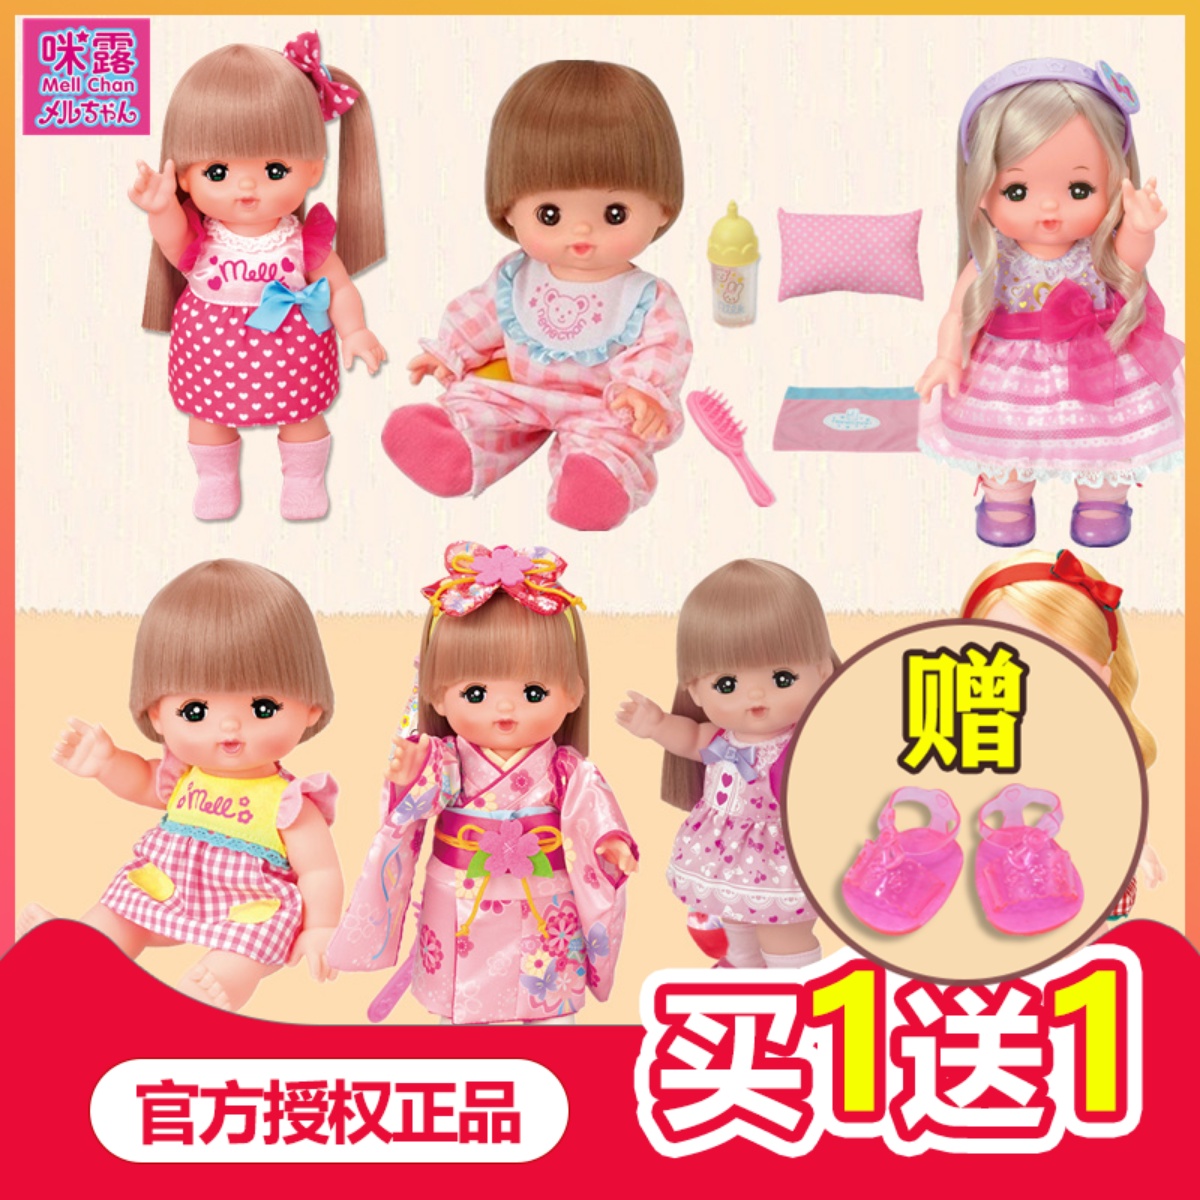 【正品】日本mellchan头发变色米露咪露娃娃妹妹睡衣爱护套装玩具